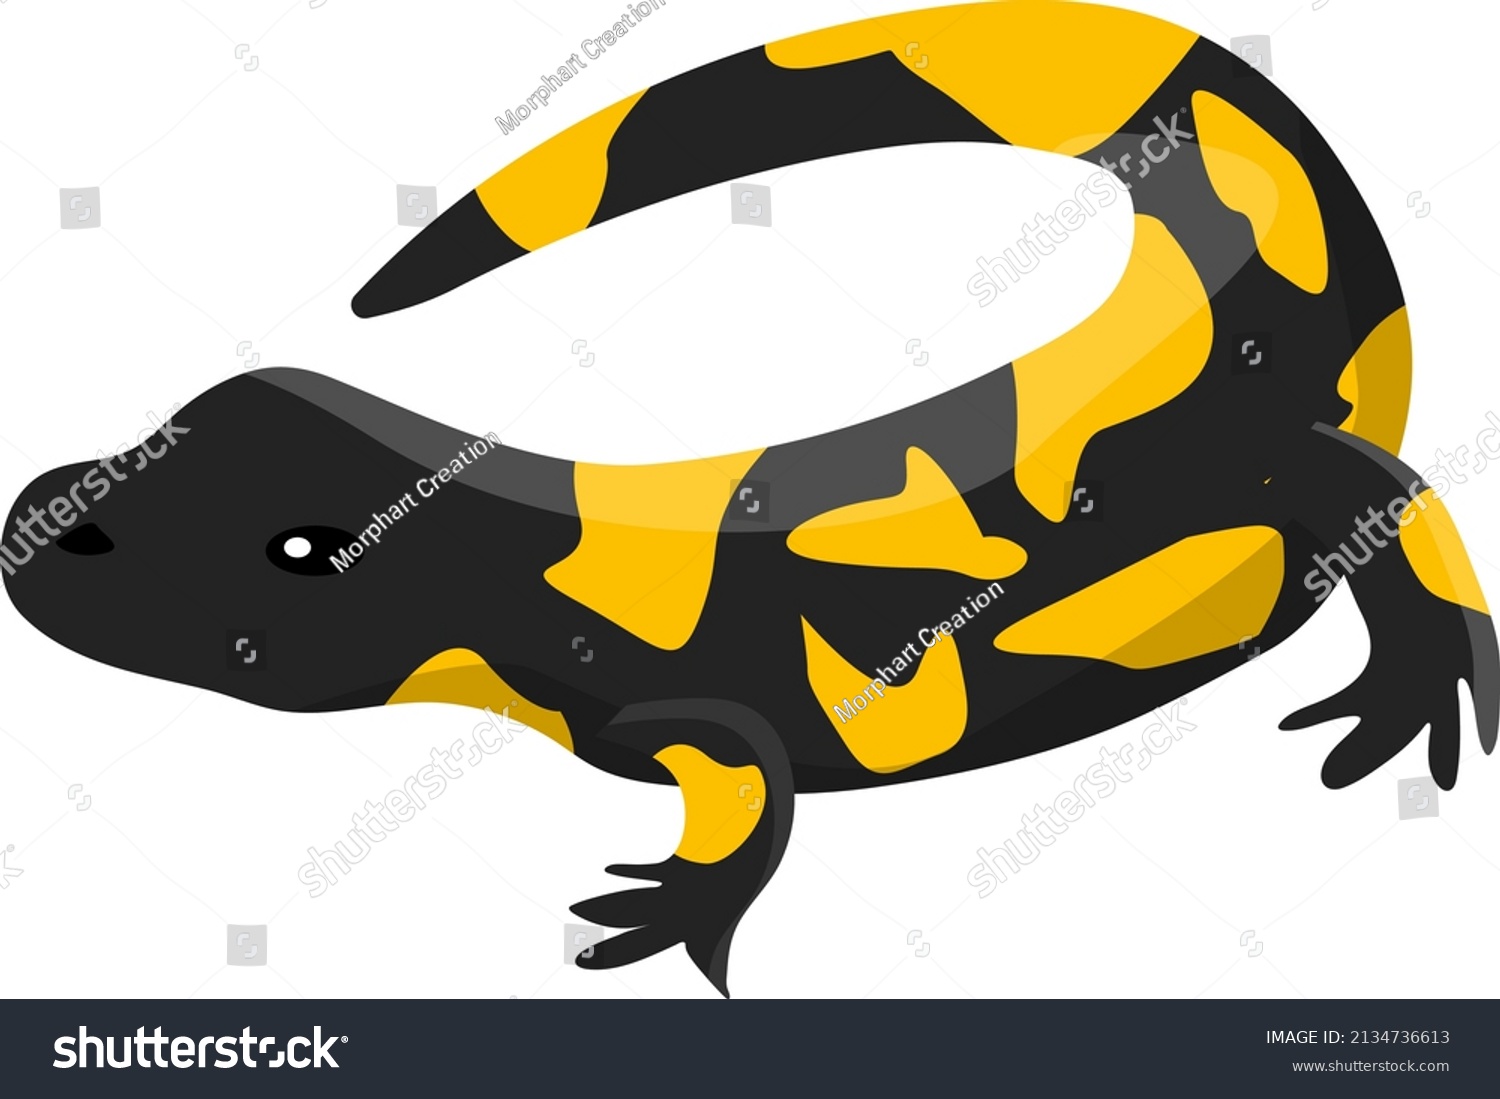 SVG of Fire salamander, illustration, vector on a white background. svg